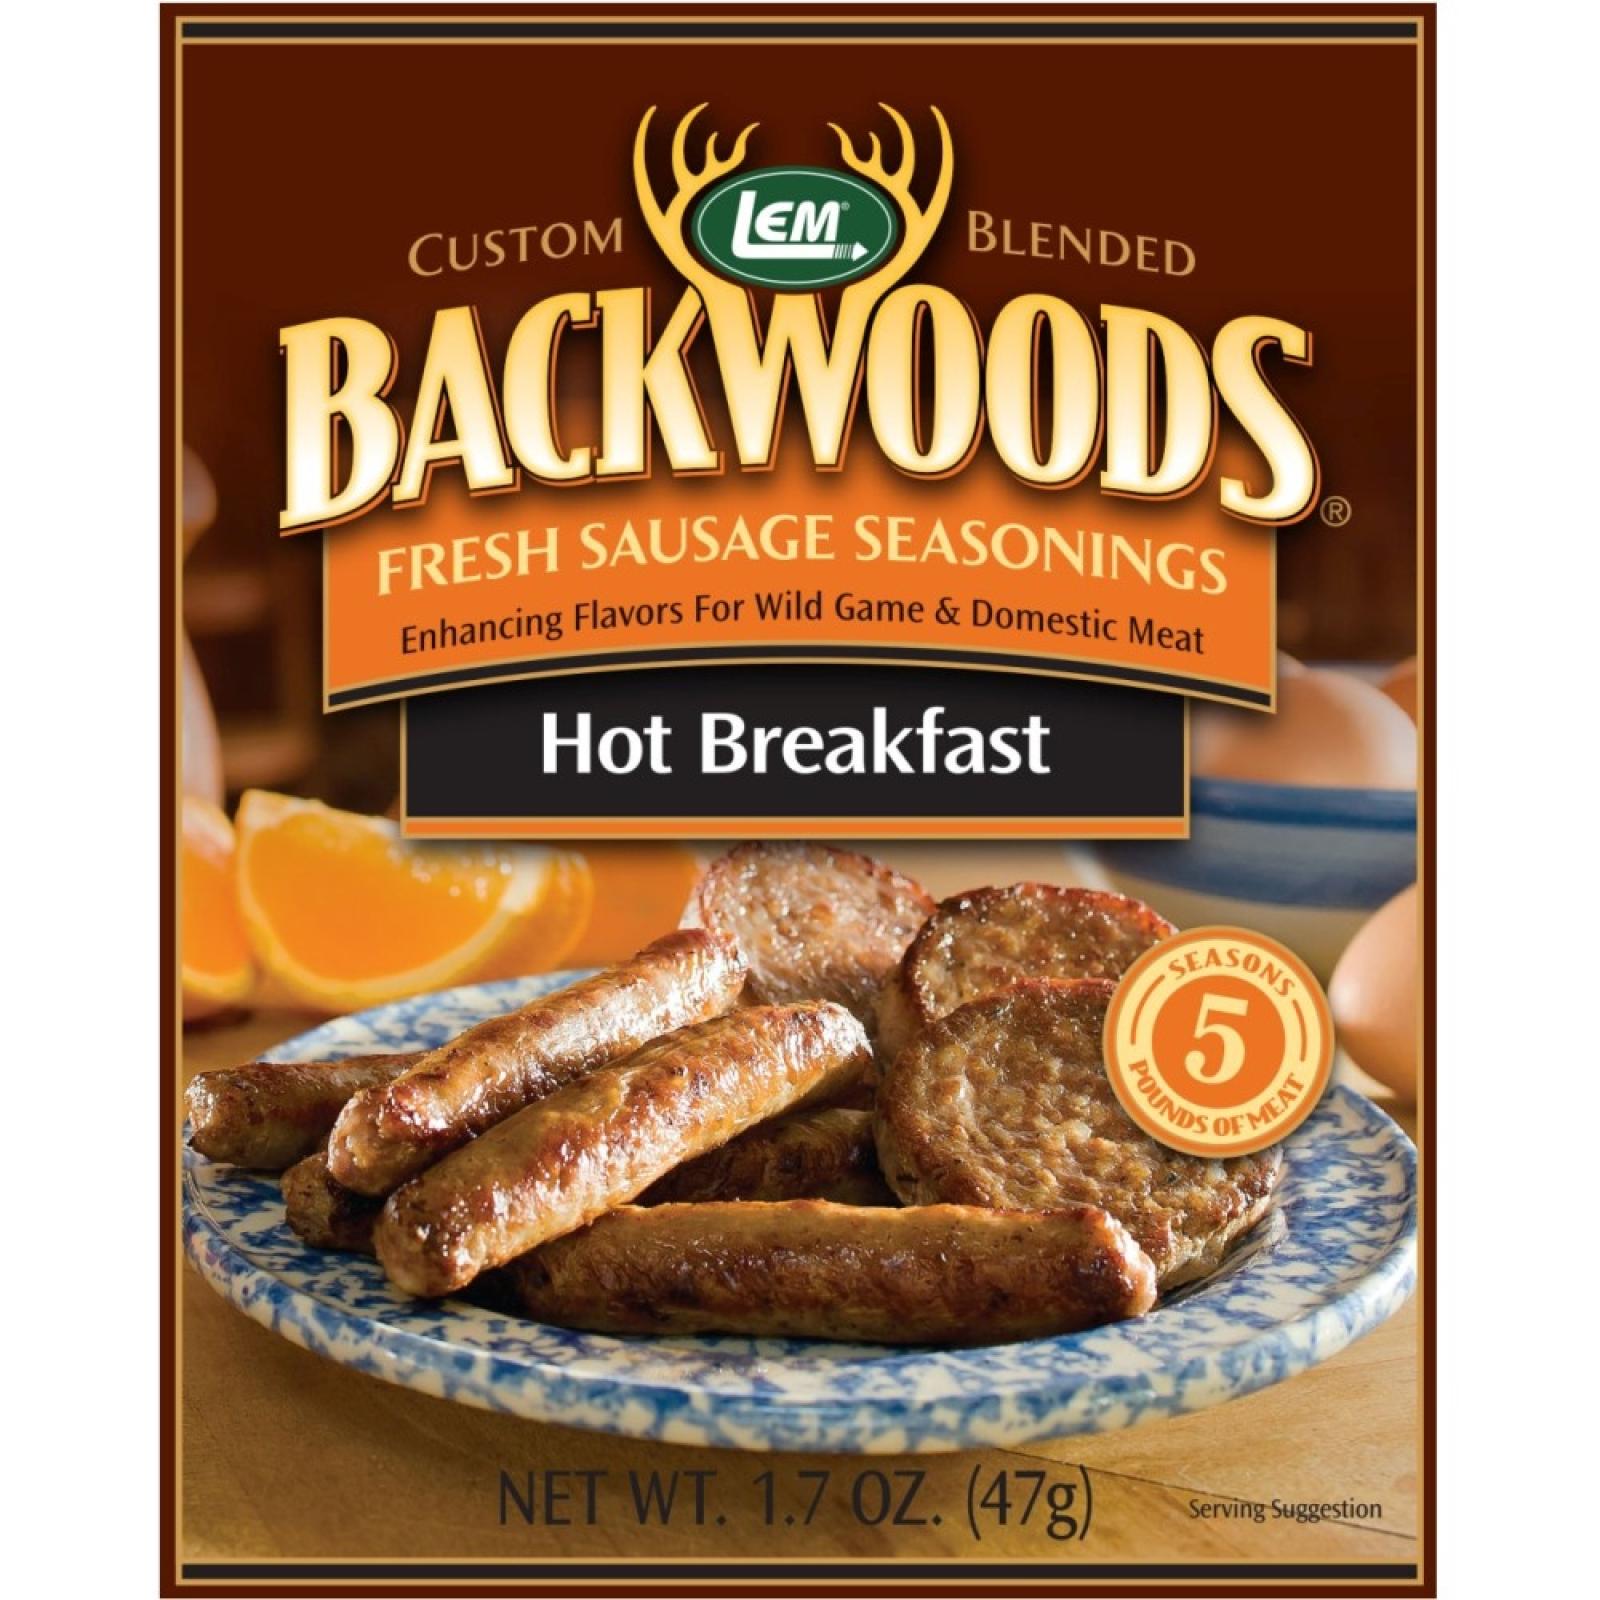 LEM Backwoods Hot Breakfast Fresh Sausage Seasonings 5lbs